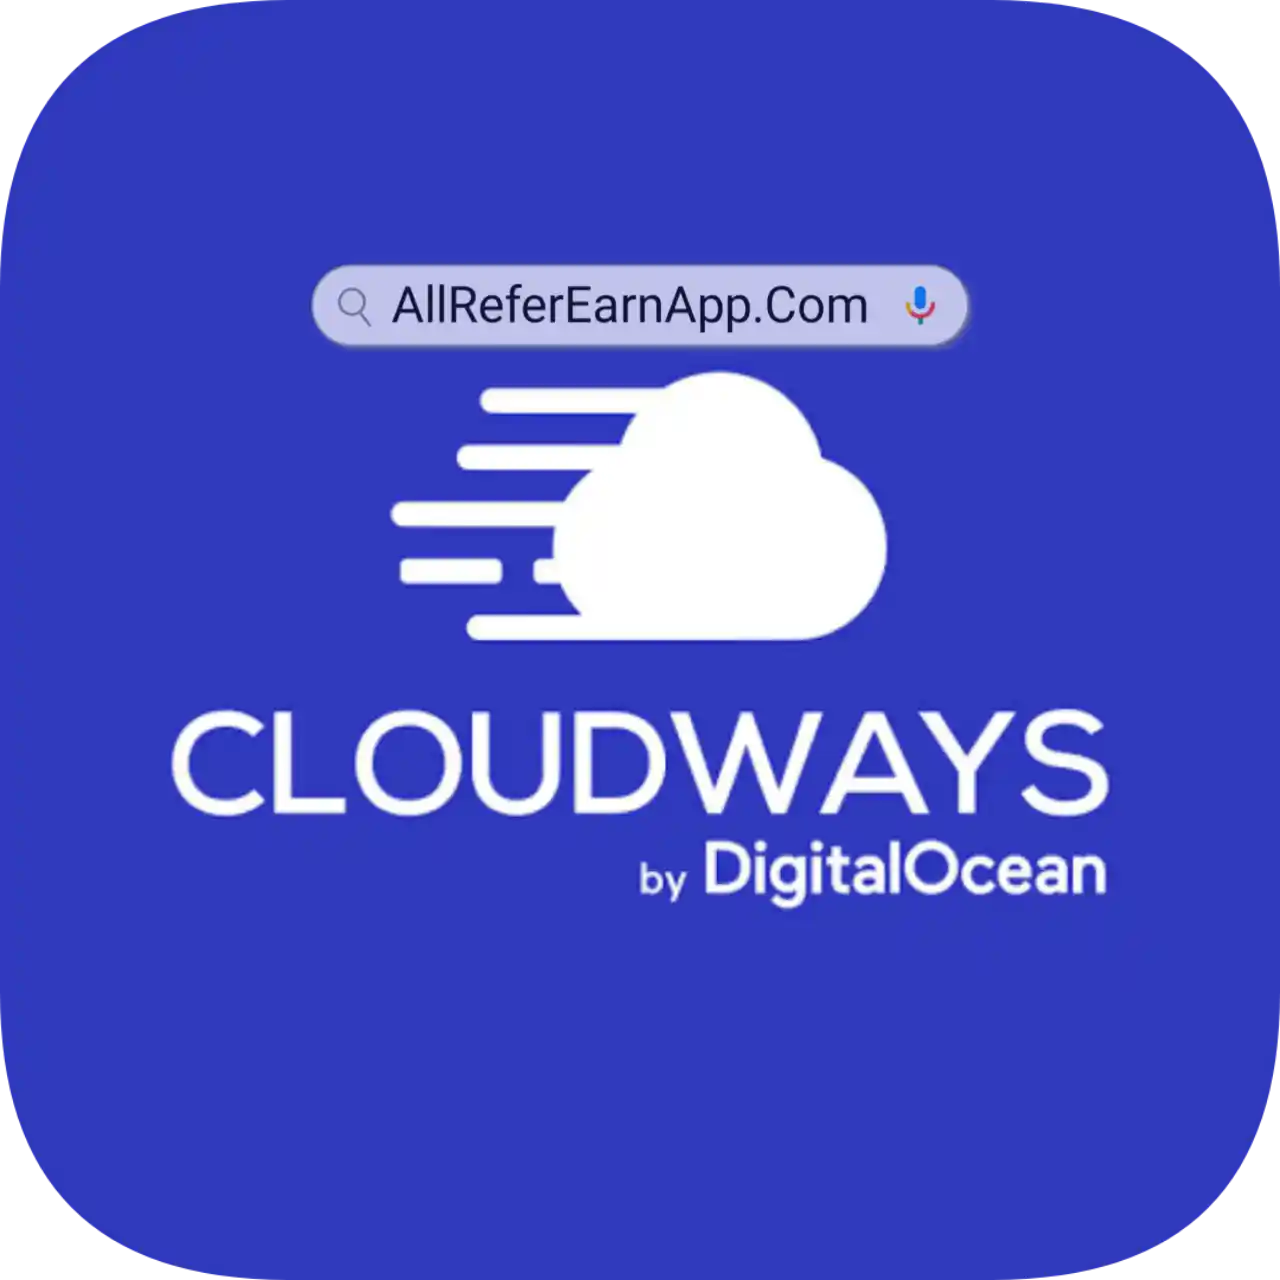 Cloudways Refer & Earn - All Refer Earn App List